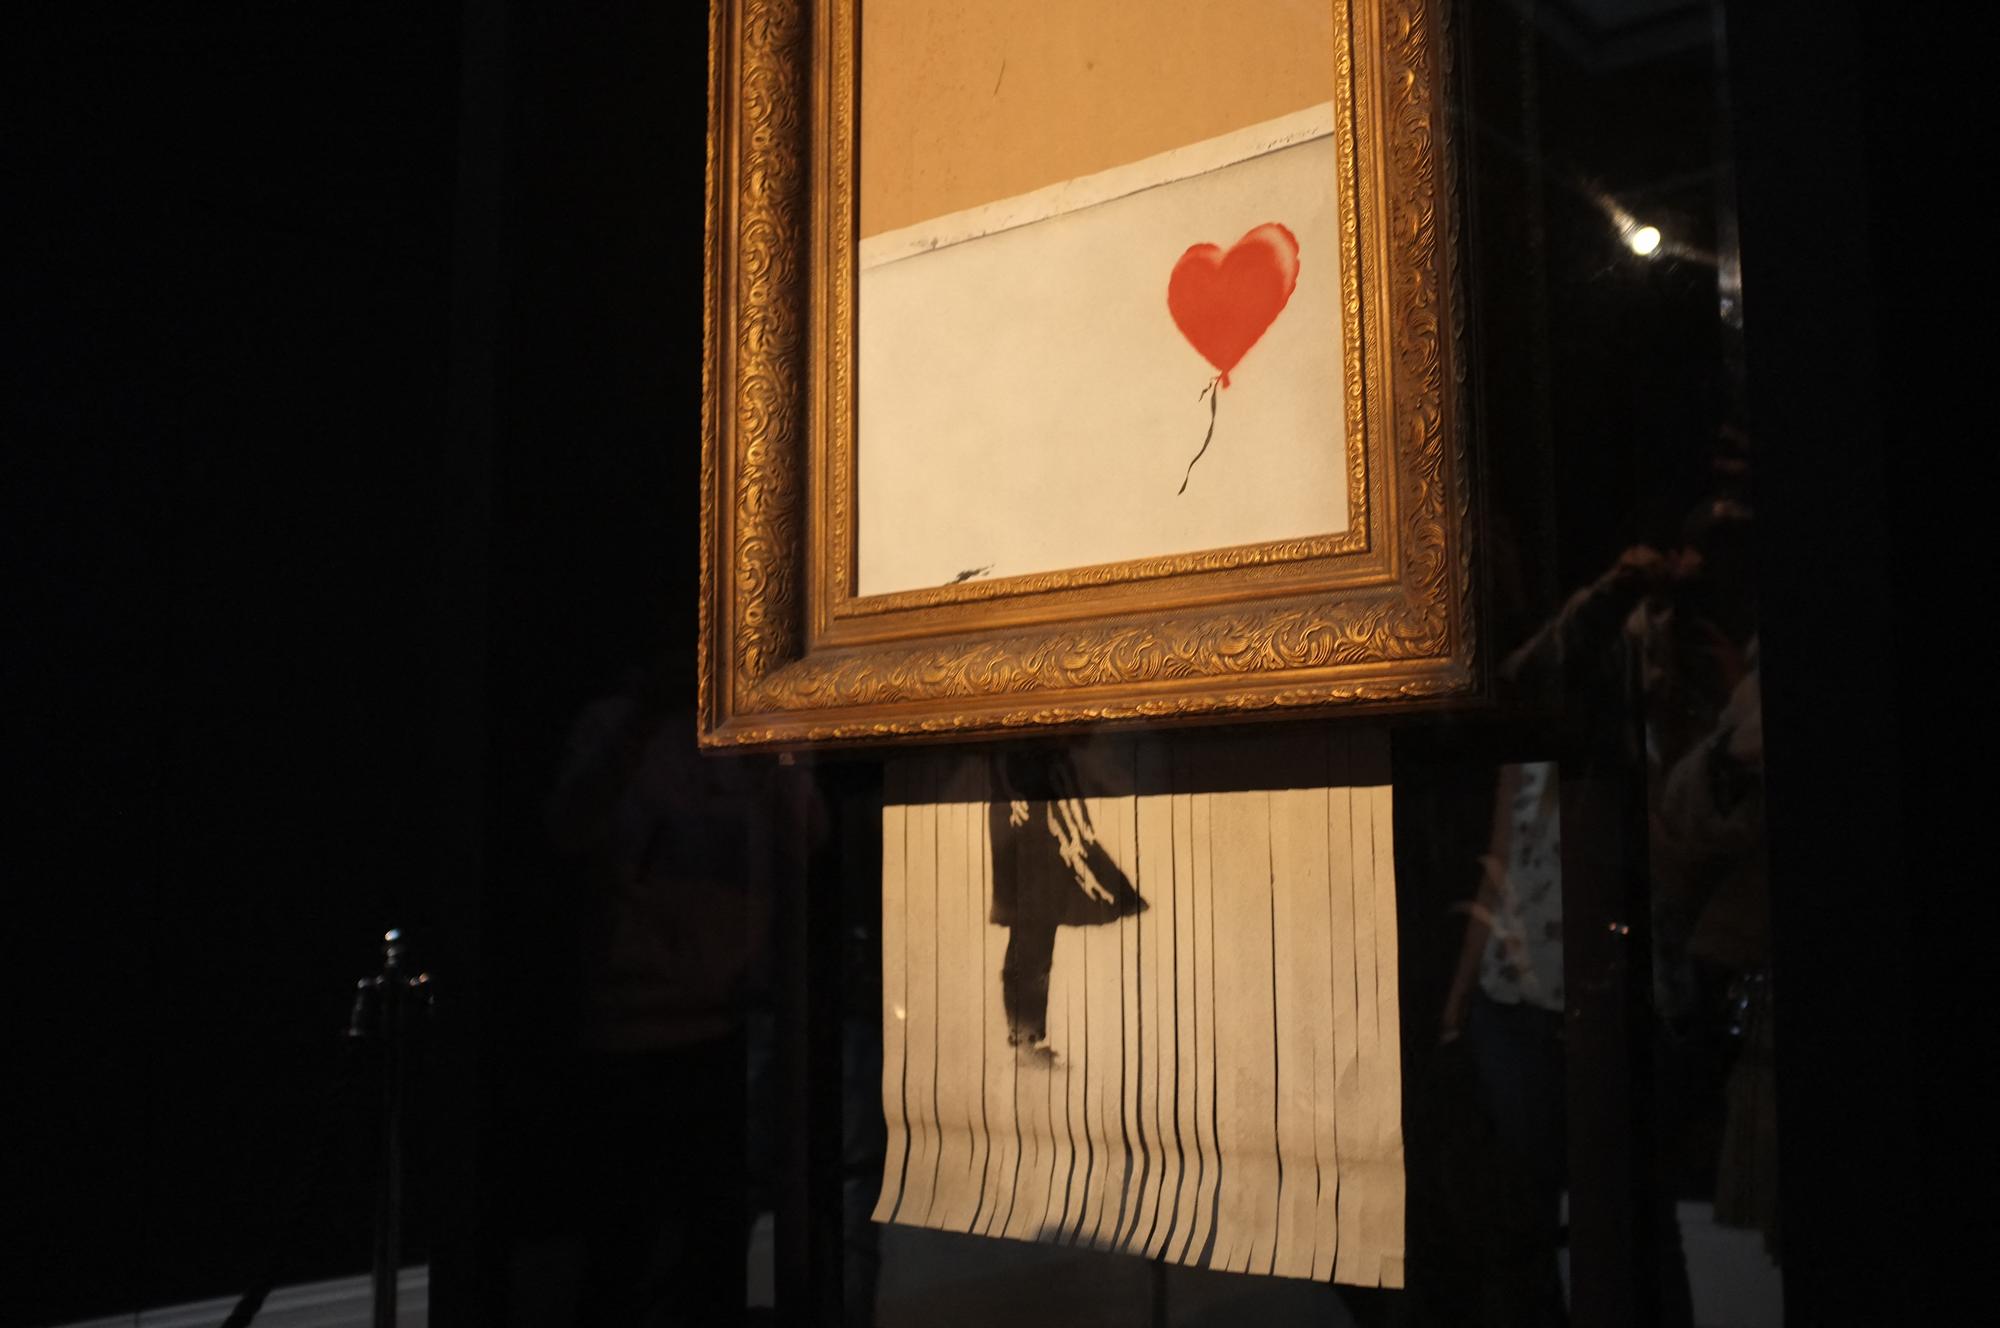 La toile "L'amour est dans la poubelle" de Banksy, qui s'est autodétruite lors d'une vente aux enchères de Sotheby's en 2018. [AFP - Alberto Pezzali / NurPhoto]